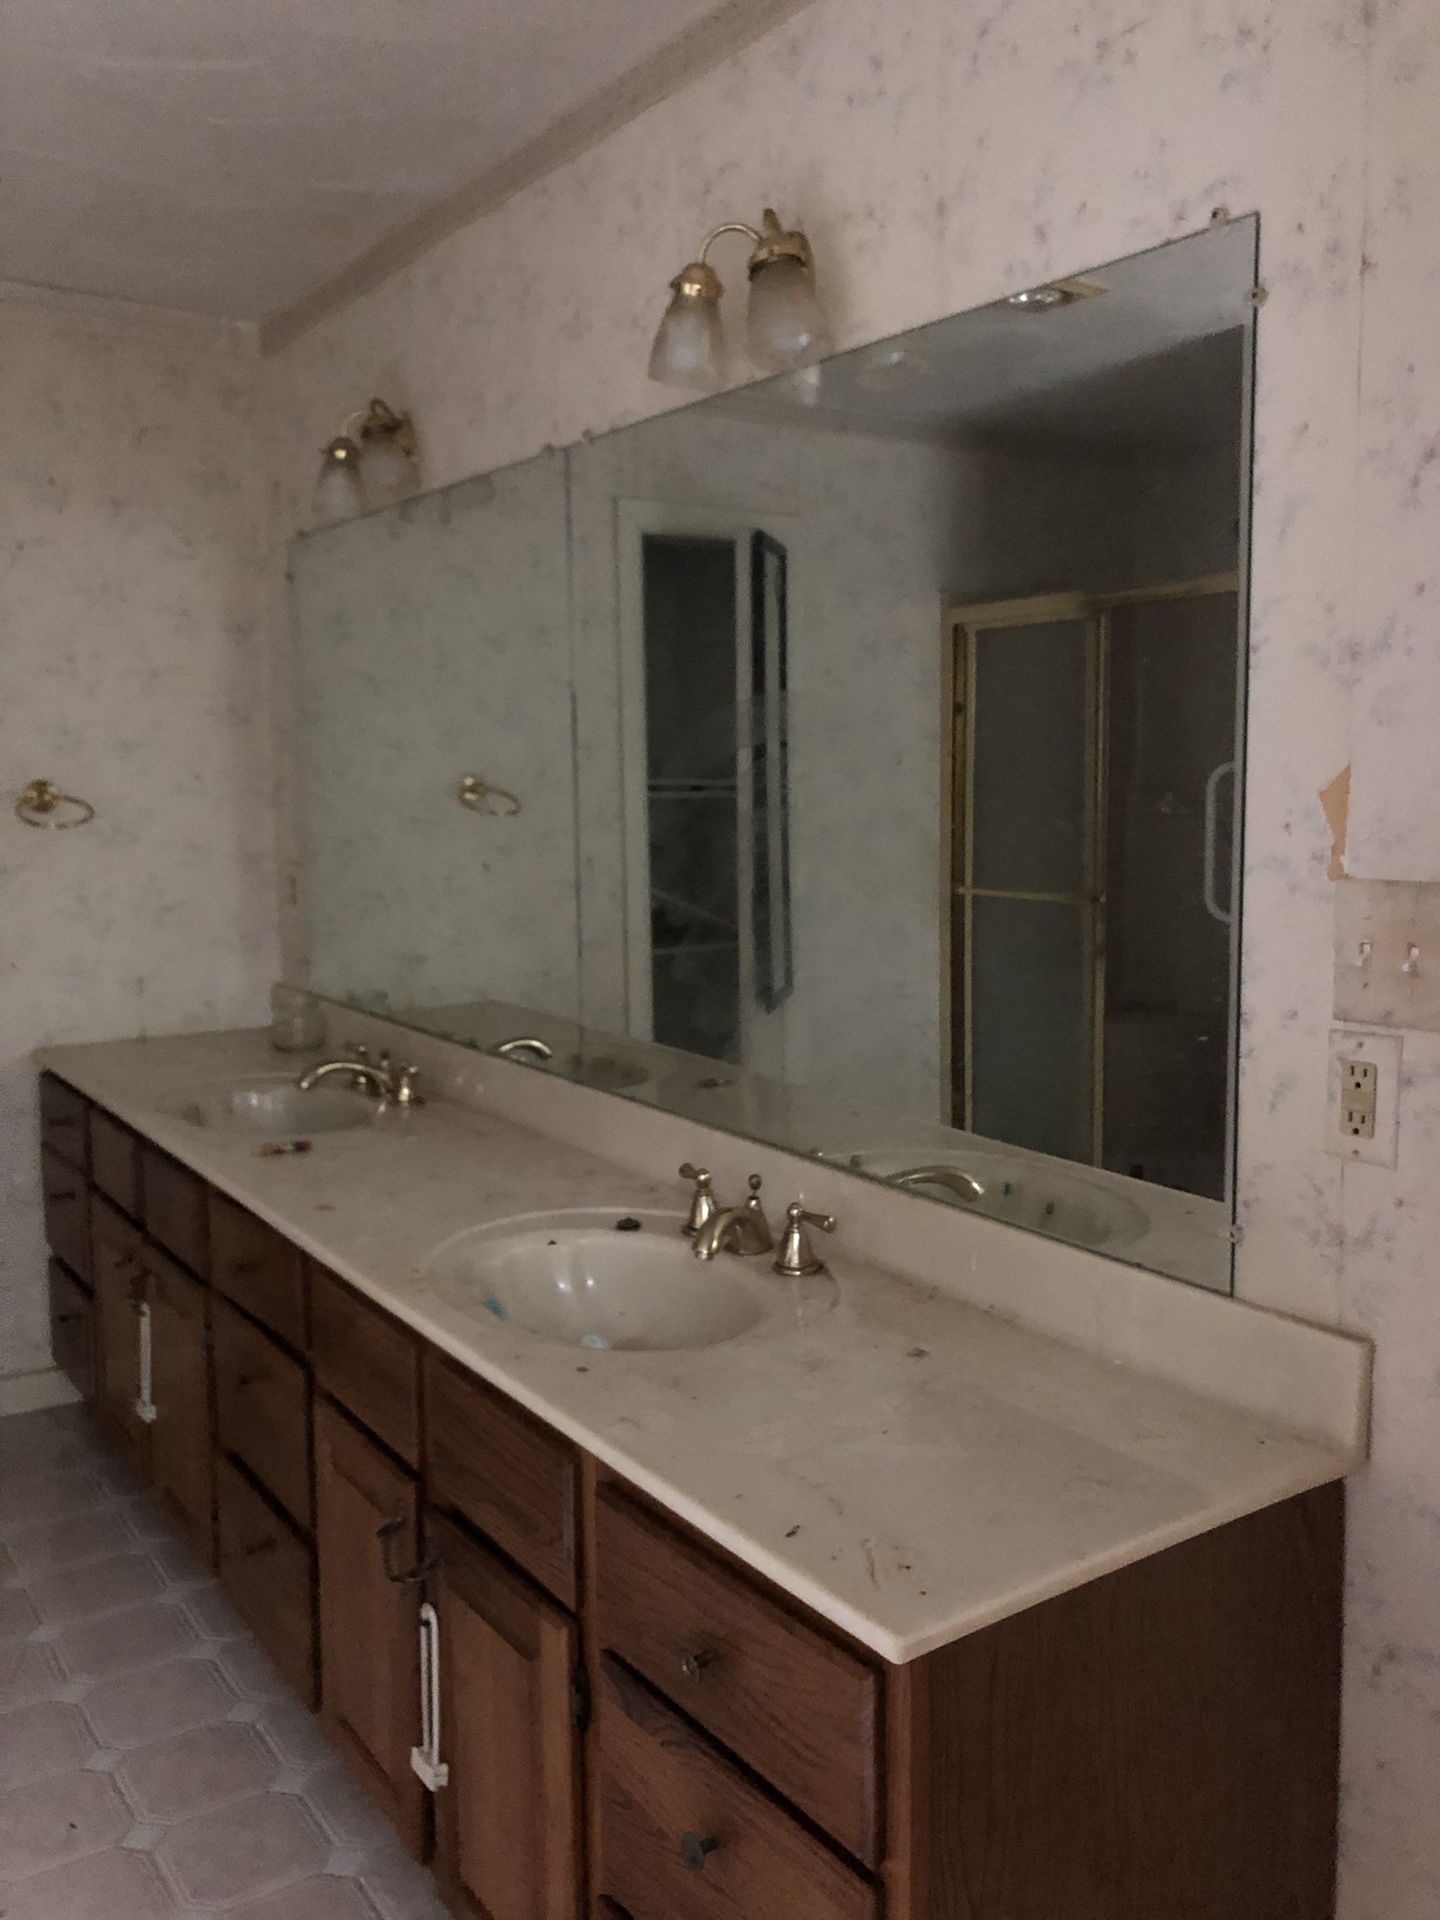 Large bathroom vanity